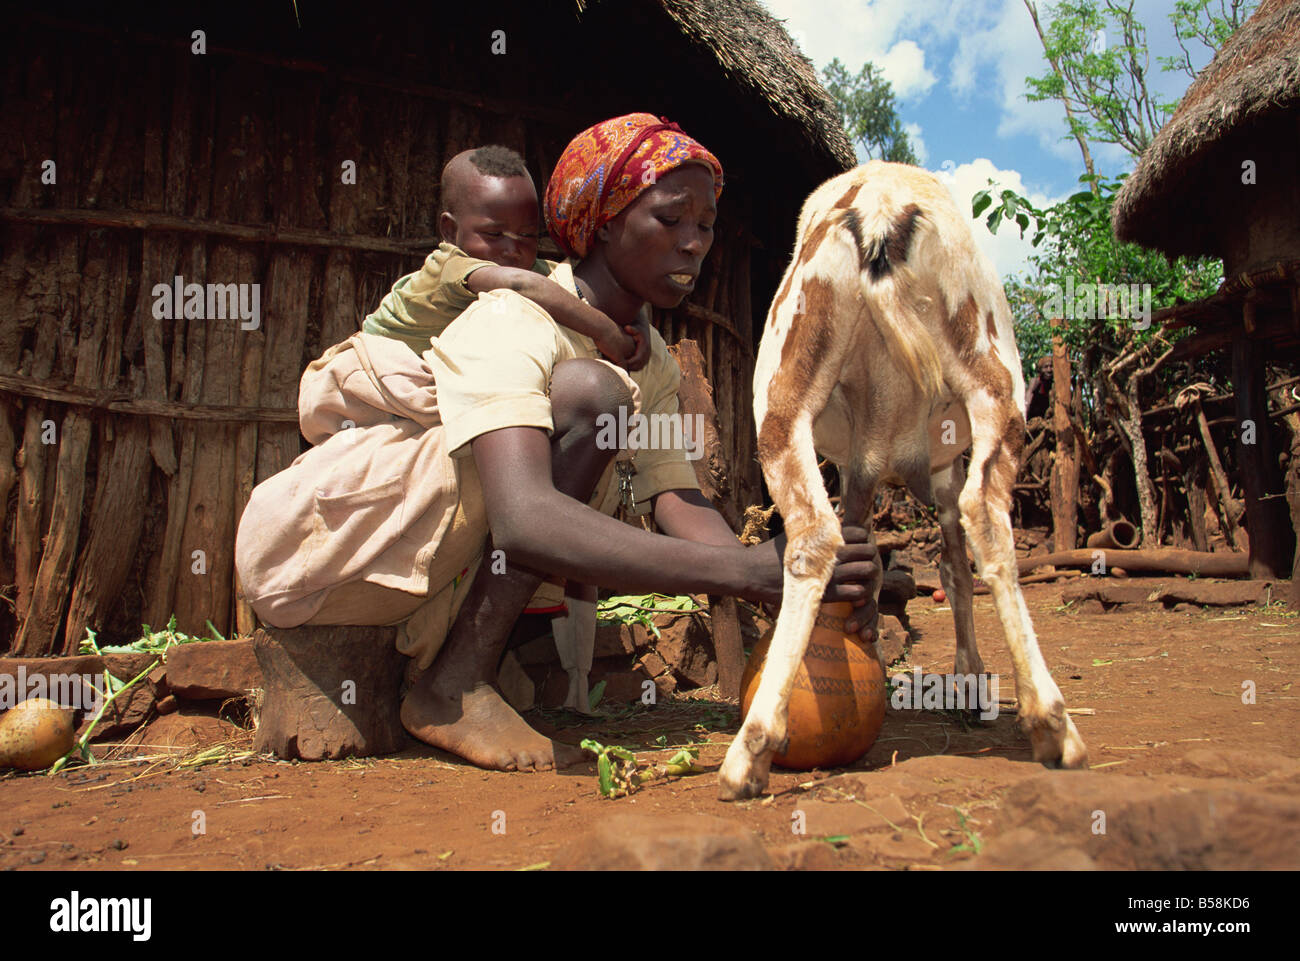 Maman avec bébé au dos de l'Afrique Ethiopie Harar chèvre à traire Banque D'Images